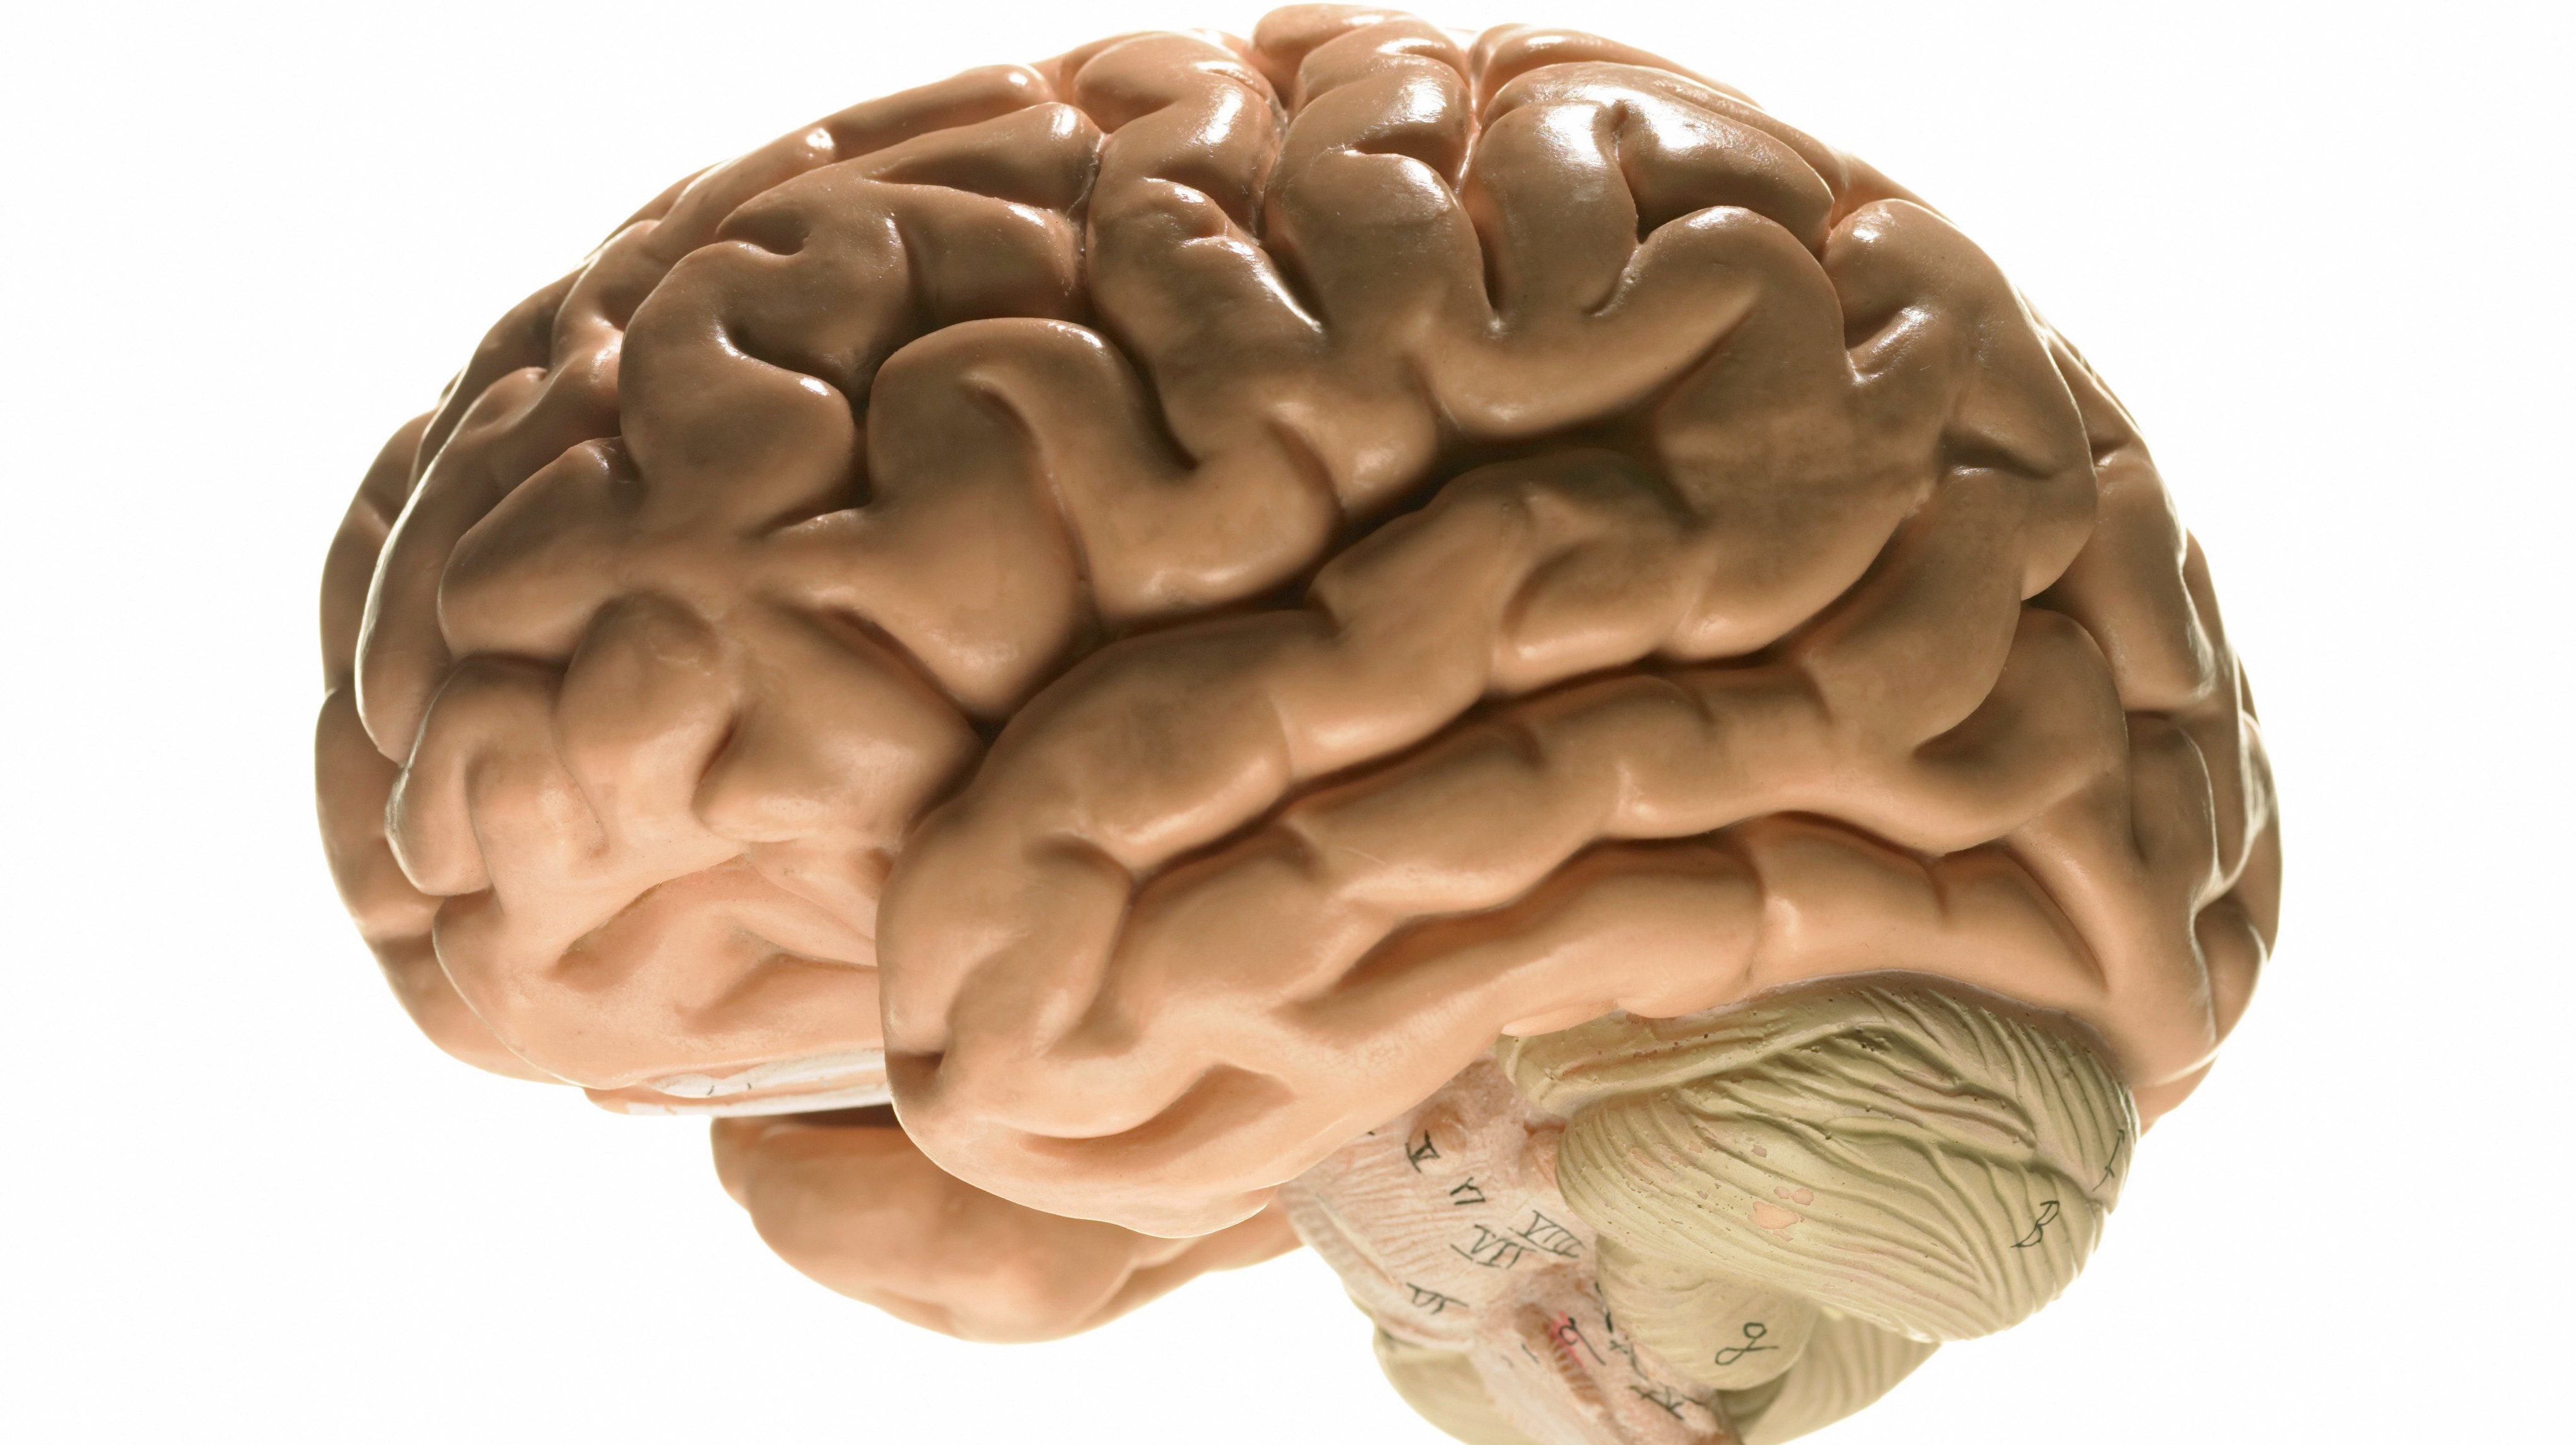 Как выглядит головной мозг человека фото